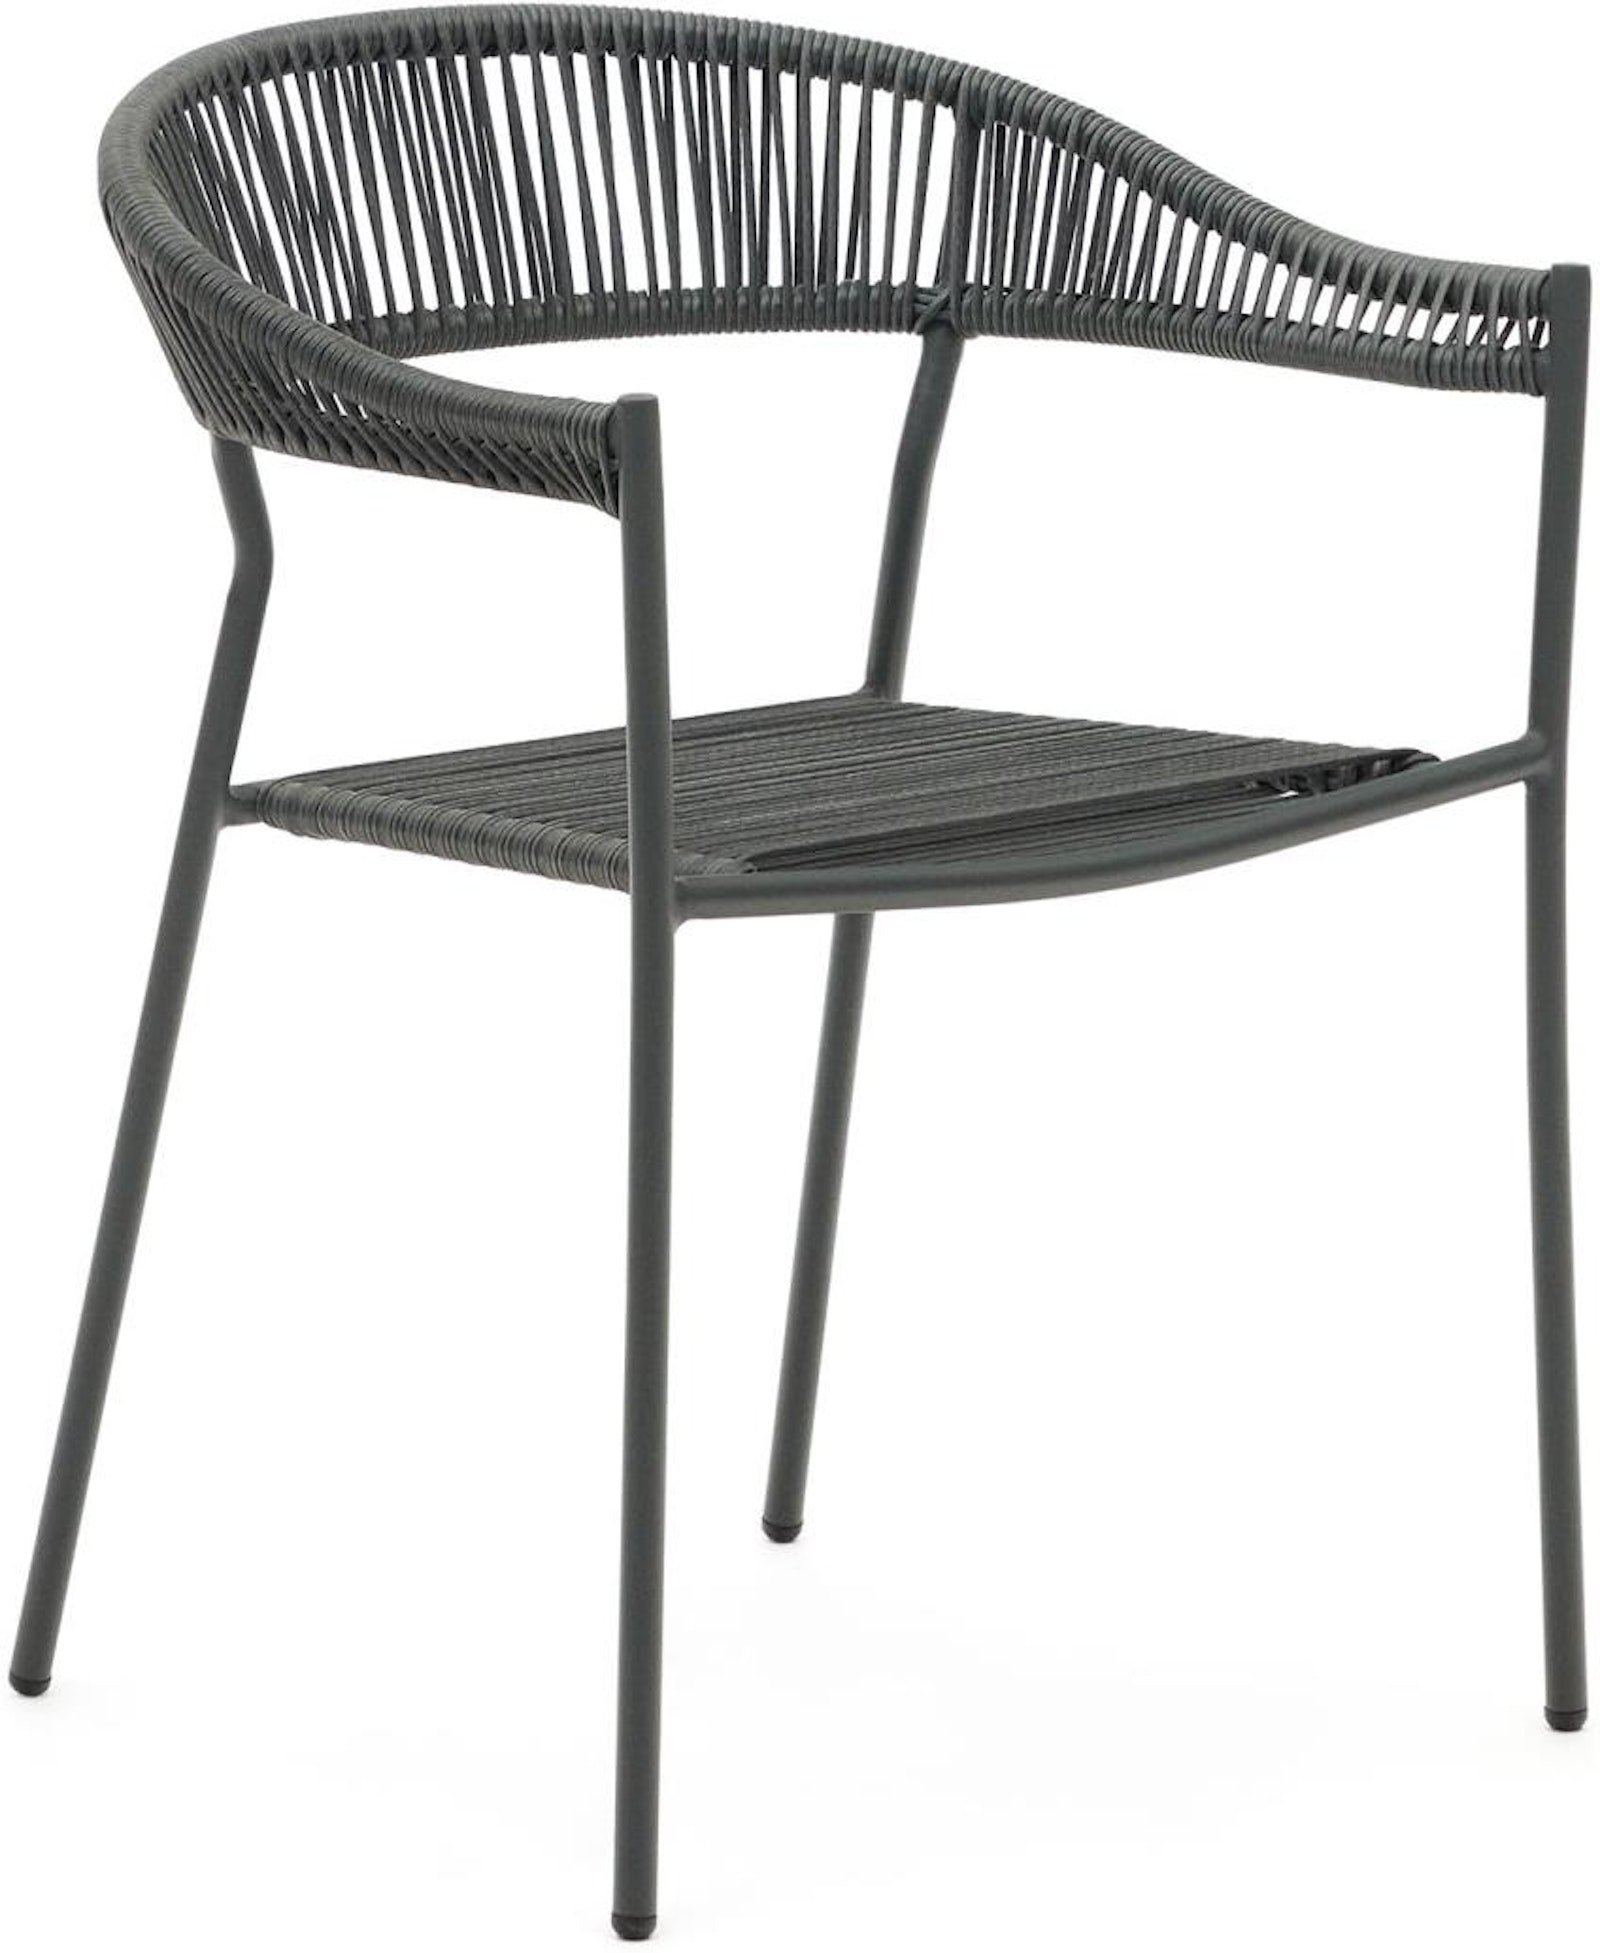 Futadera, Udendørs stol, moderne, nordisk by Laforma (H: 76 cm. x B: 57 cm. x L: 54 cm., Grå)